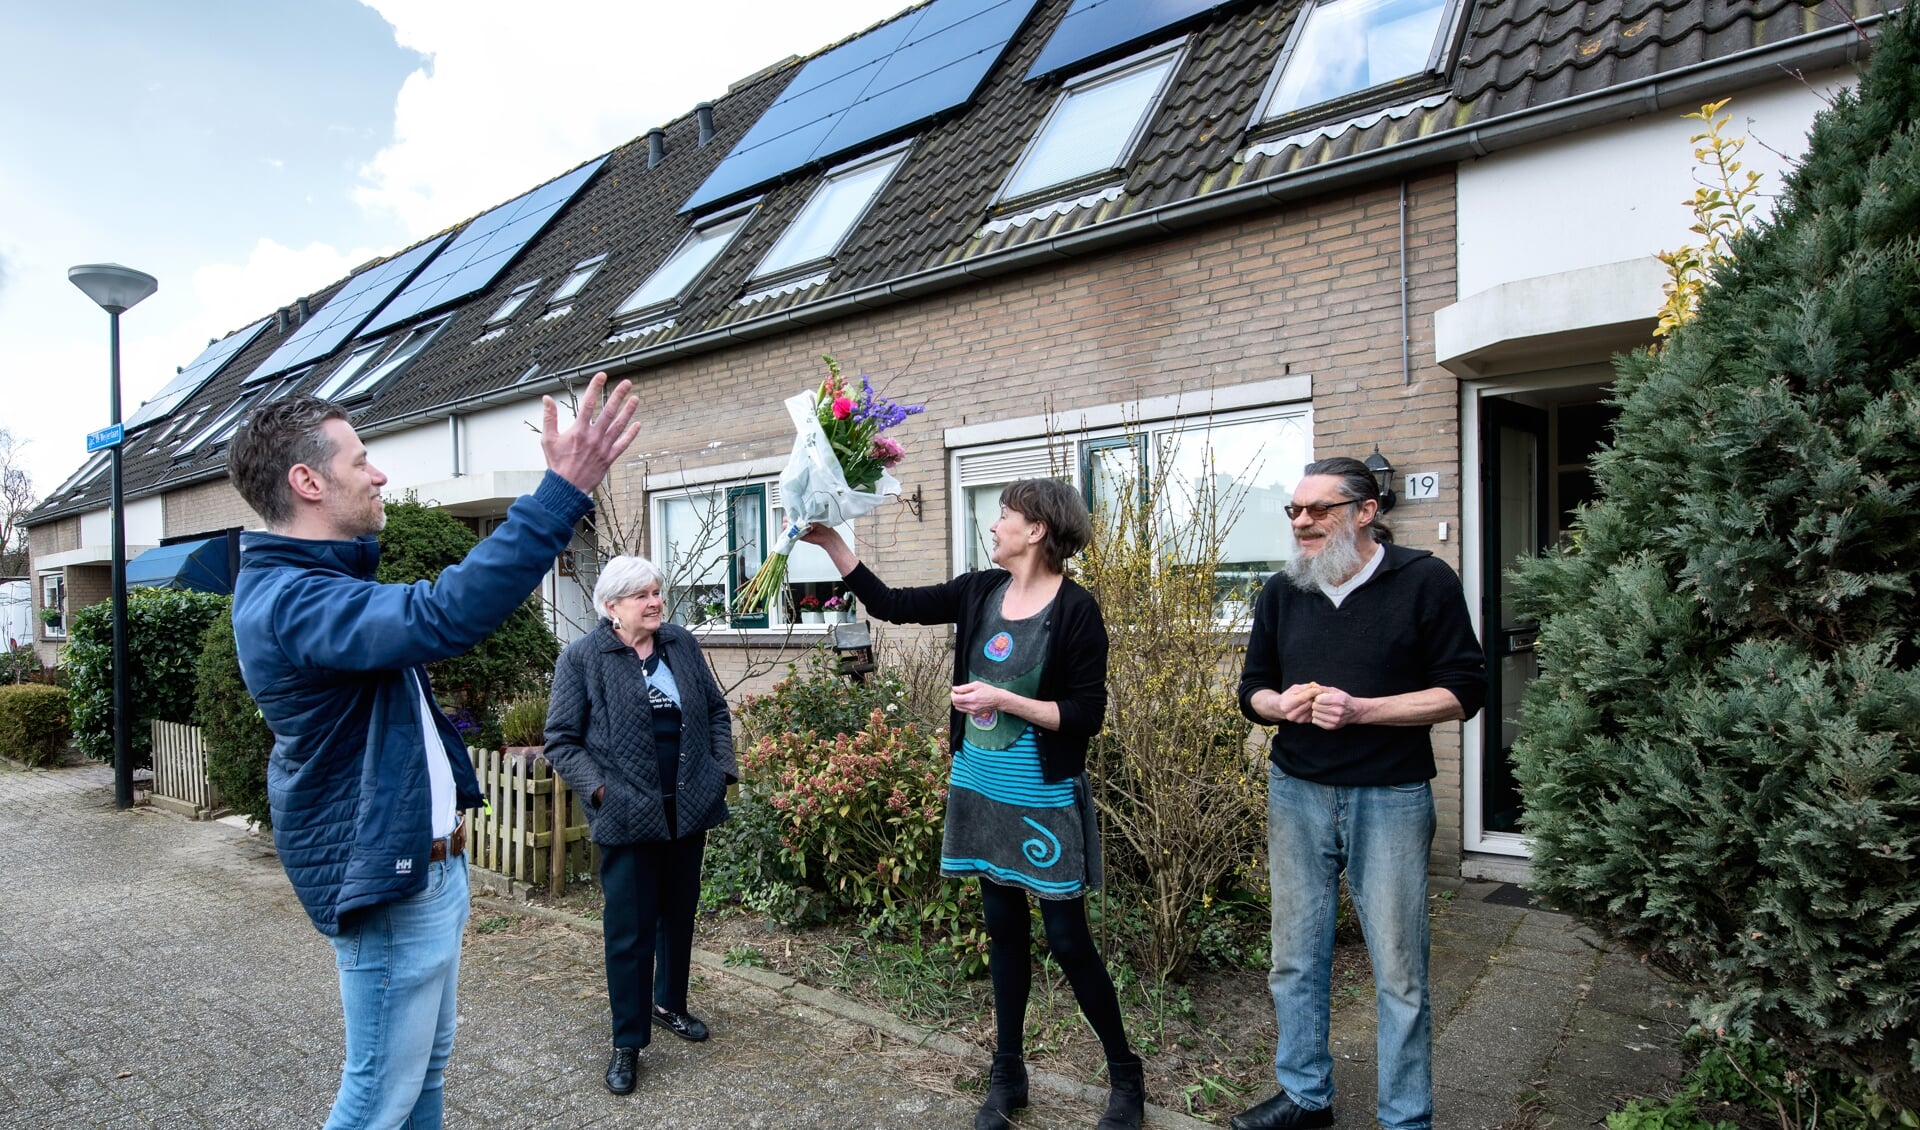 Bewoners ontvangen een bloemetje om te vieren dat de Jacob de Weijerlaan 100% gaat voor zonne-energie.